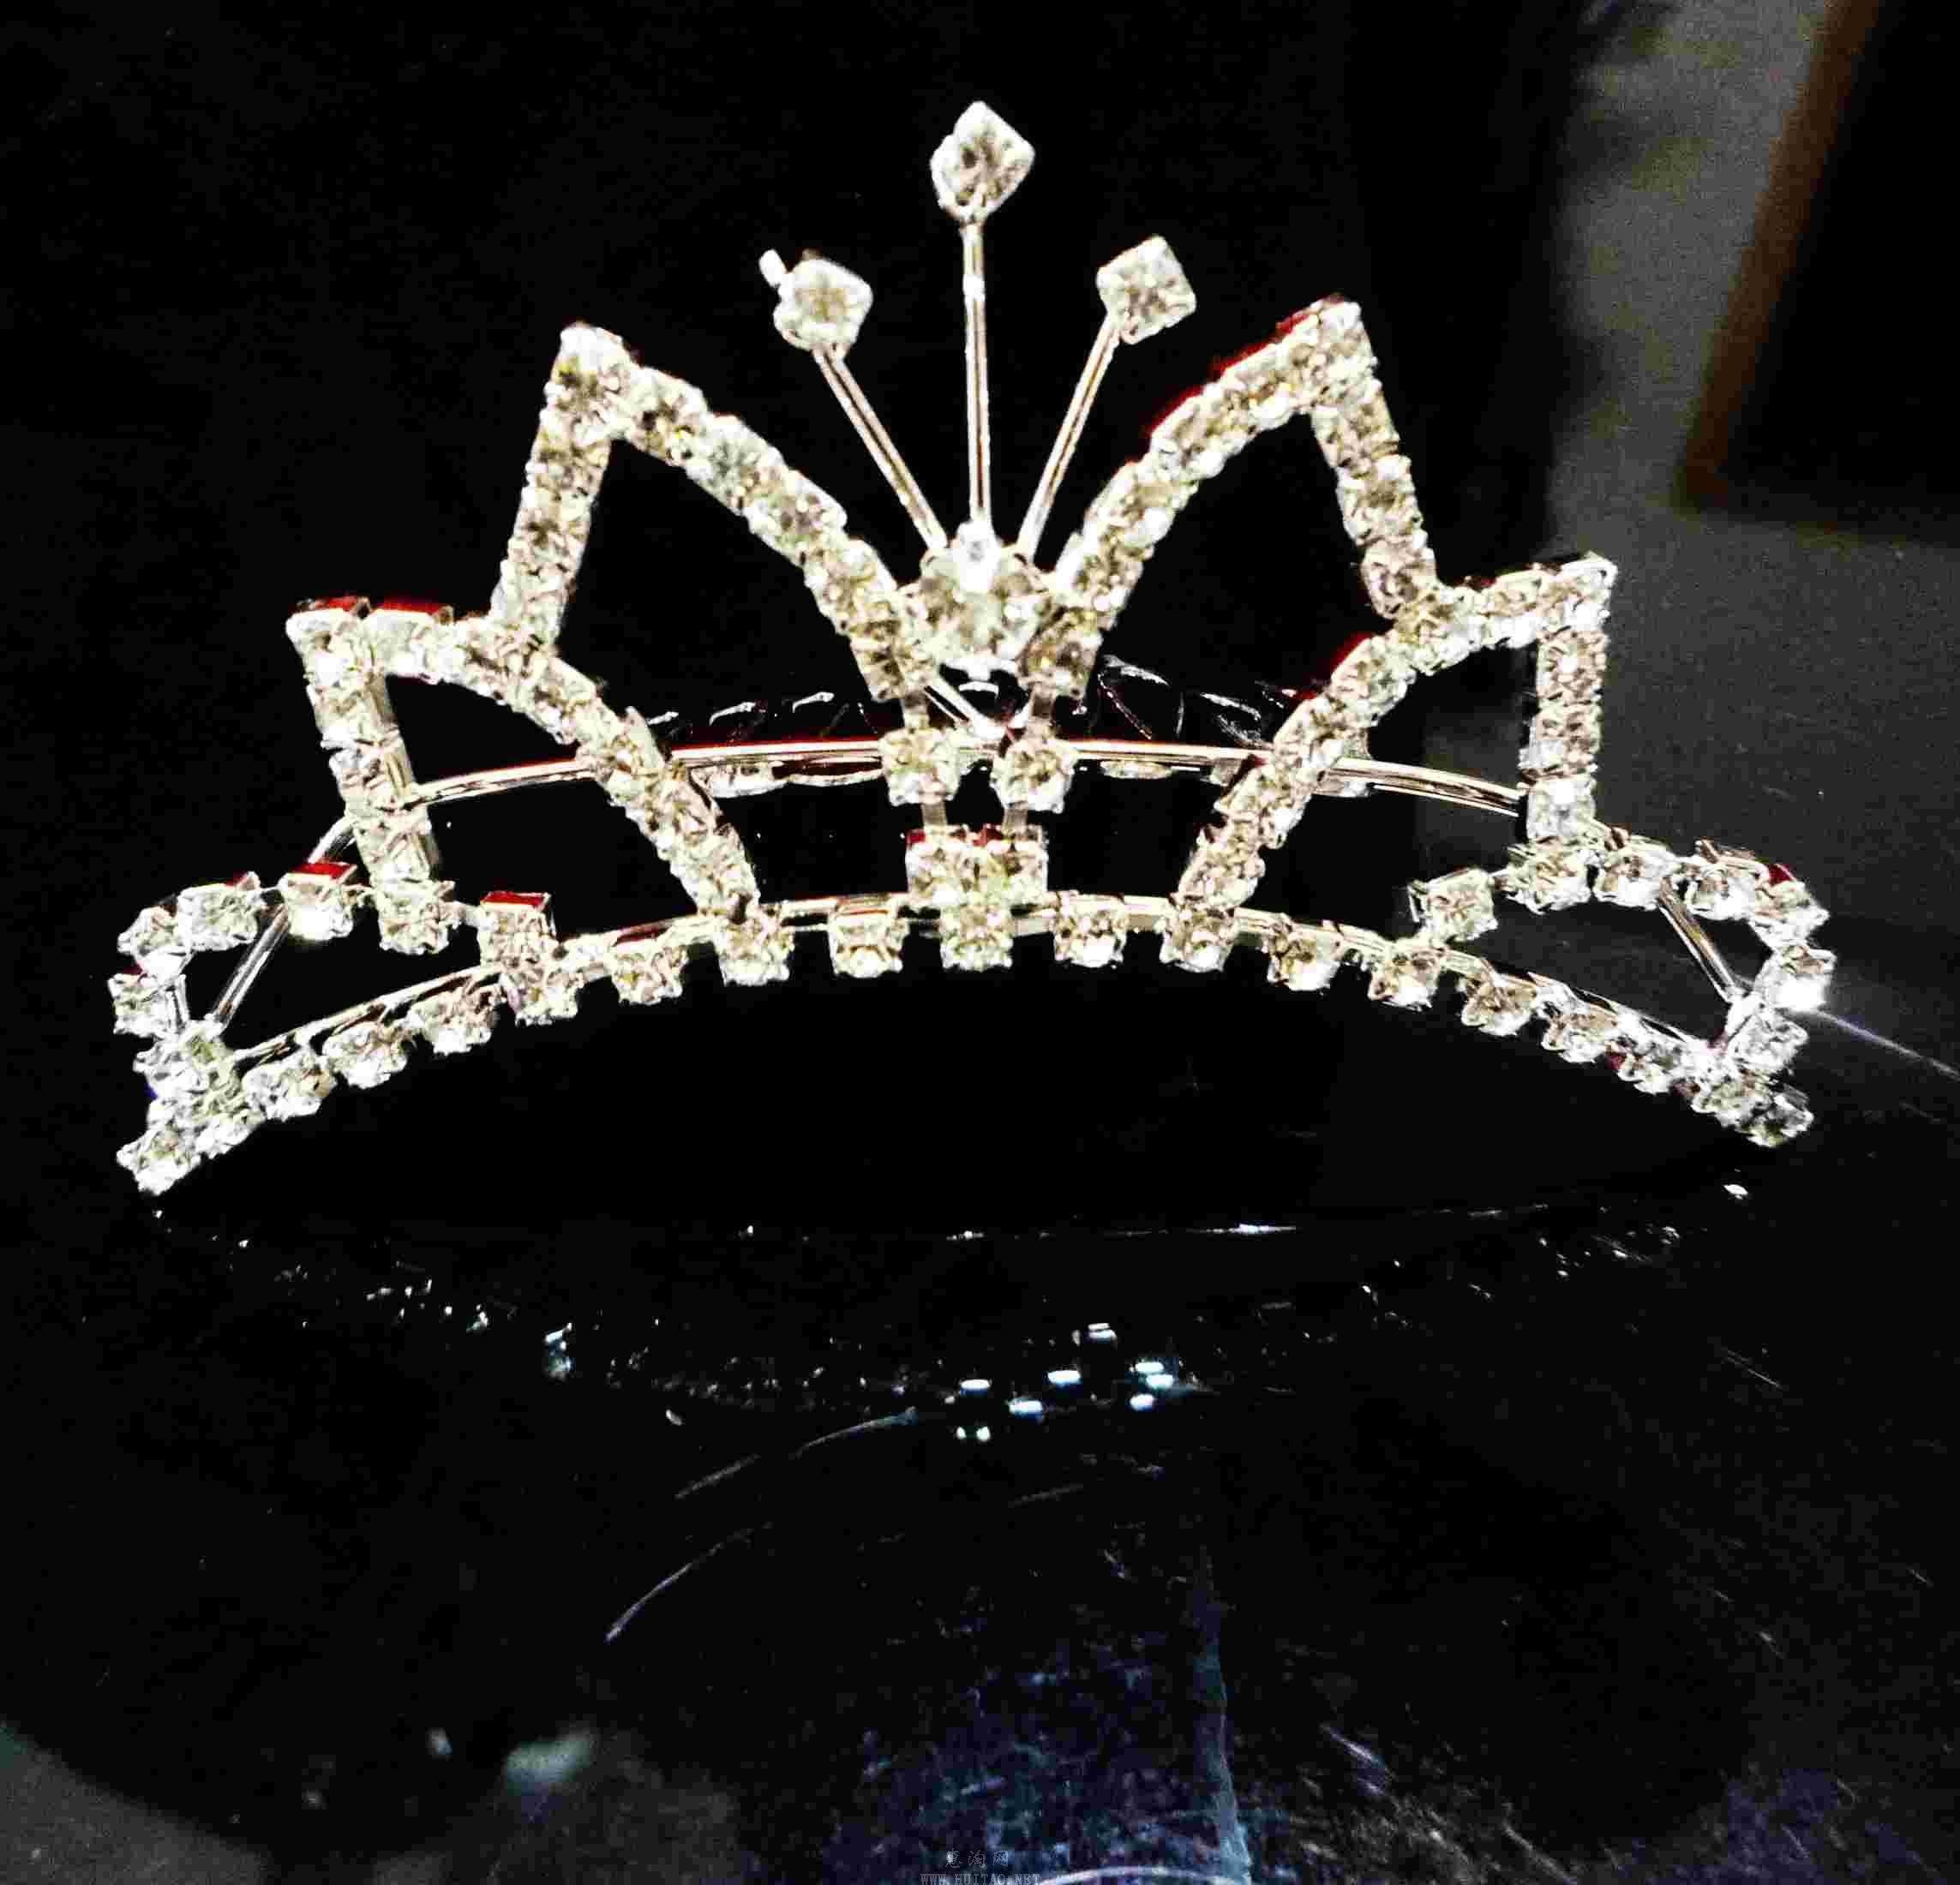 X017新款新娘皇冠项链耳环锆石三件套 韩式王冠串珠礼婚套装头饰-阿里巴巴